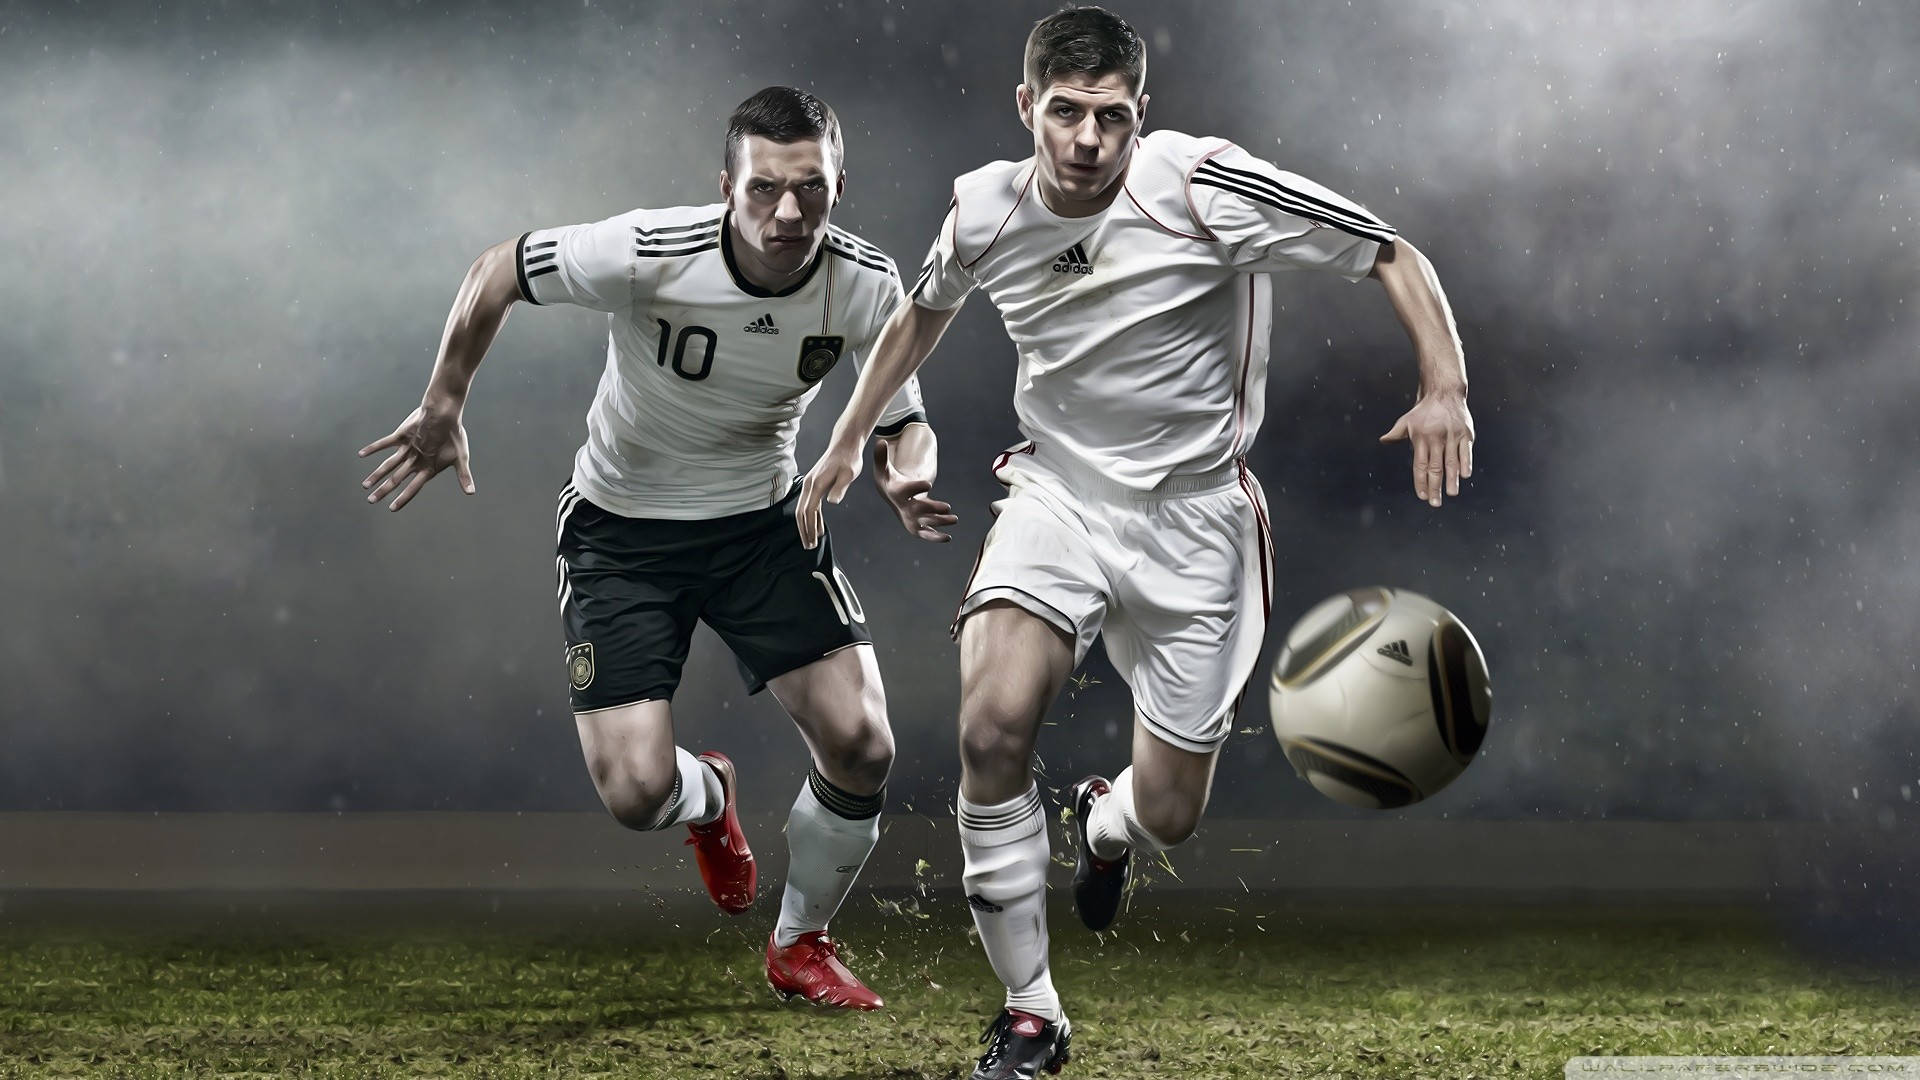 To spillere der spiller fodbold HD-baggrundsbillede Wallpaper